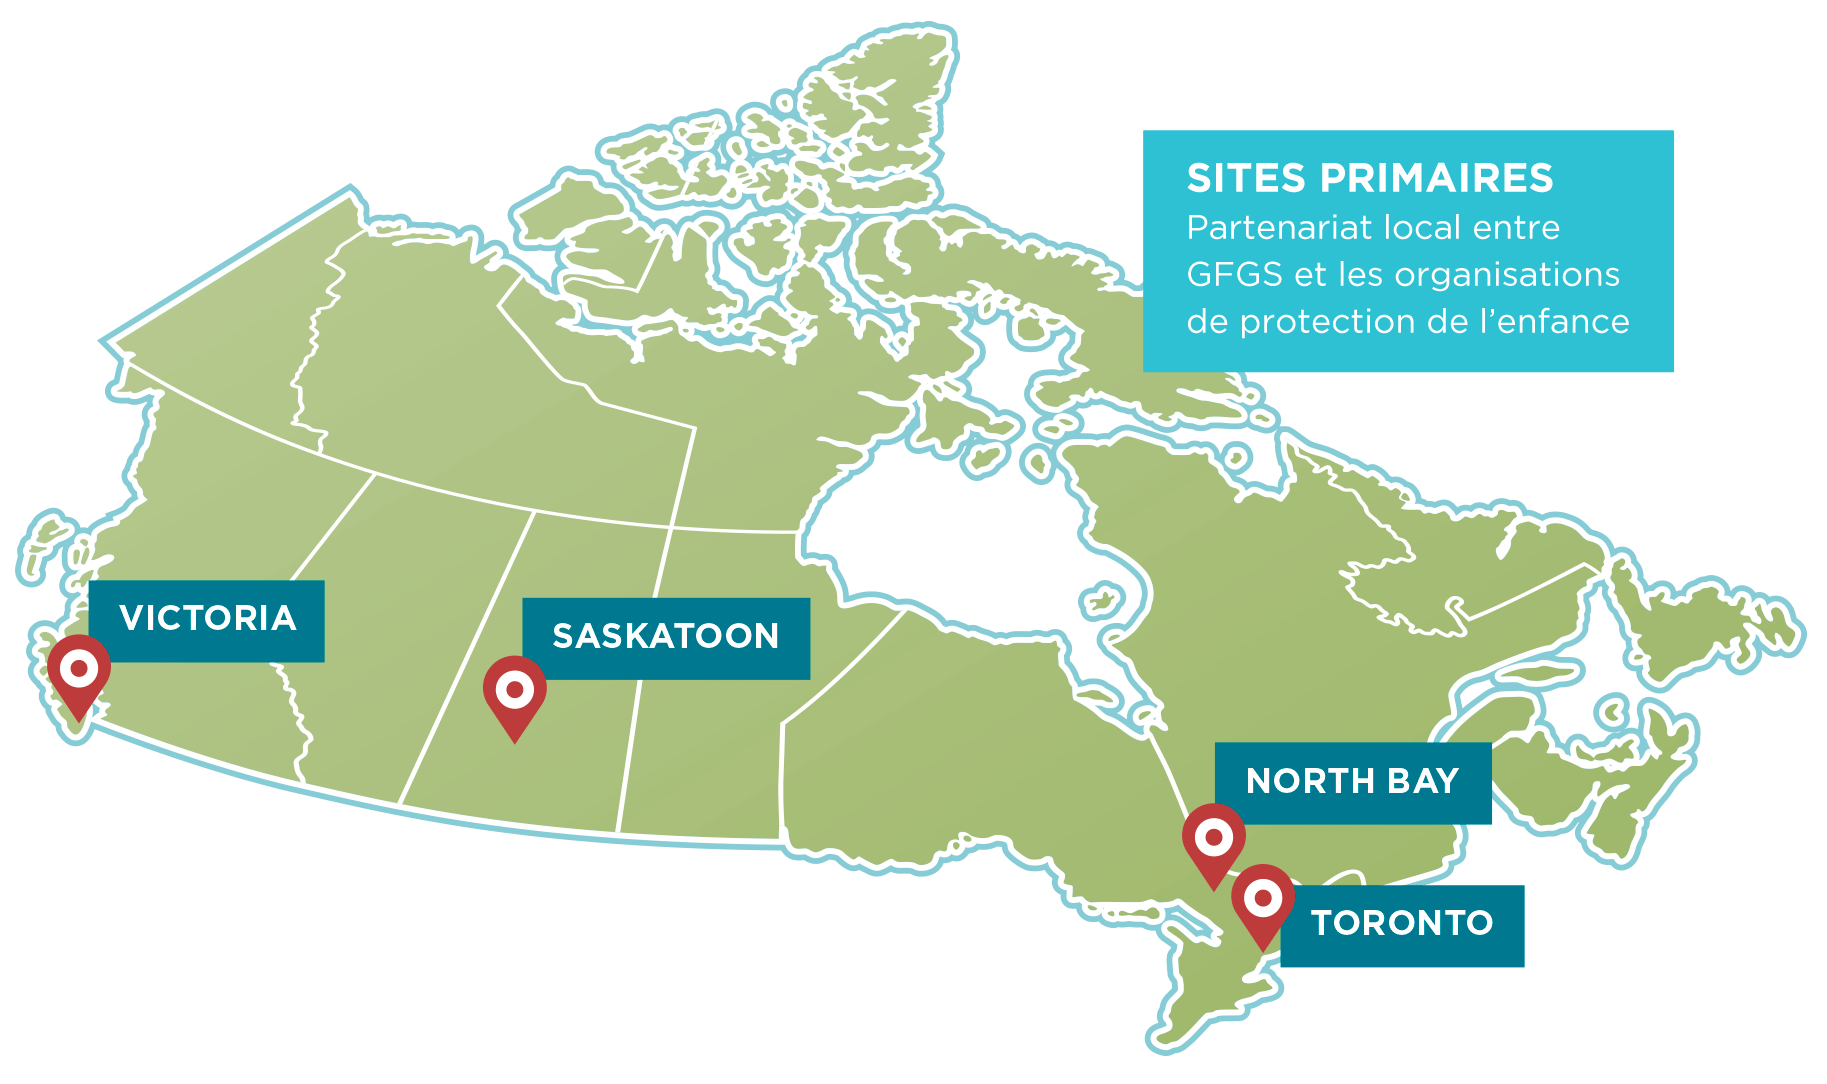 SITES PRIMAIRES Partenariat local entre GFGS et les organisations de protection de l’enfance  - Victoria, Saskatoon, North Bay & Toronto